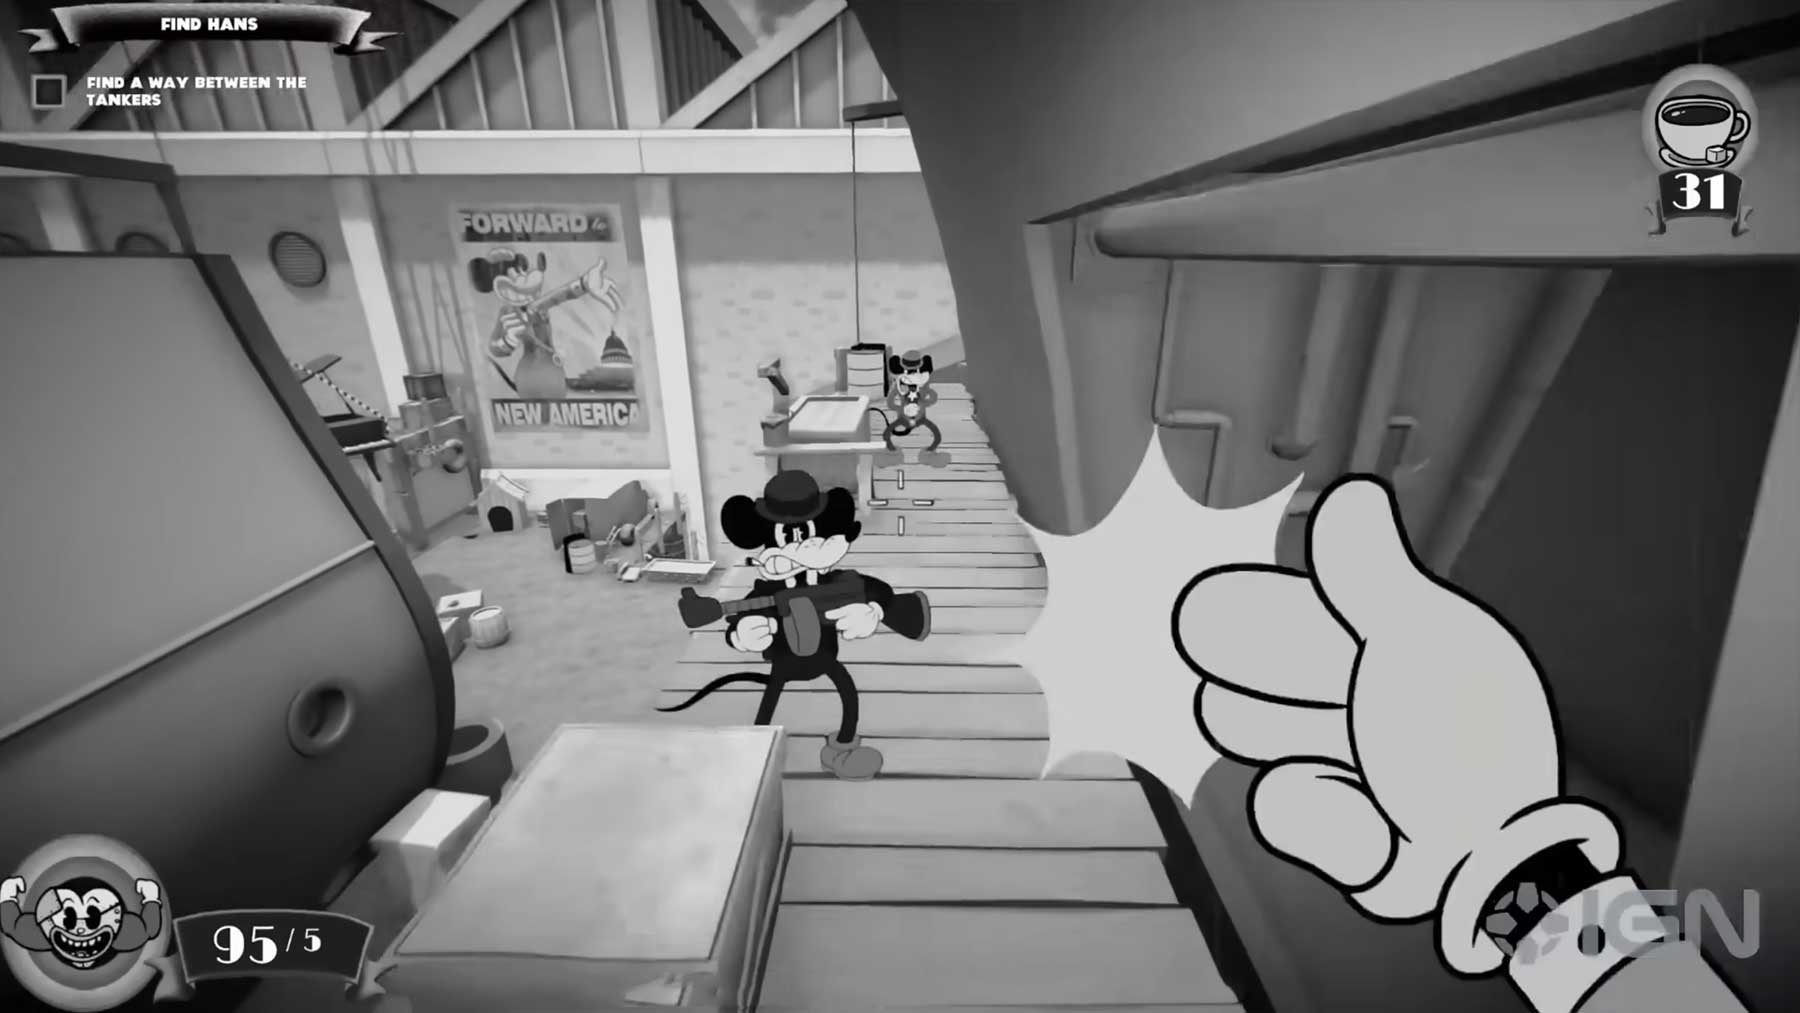 Shooter „Mouse“: Gameplay Trailer zum Spiel im Retro-Cartoon-Look